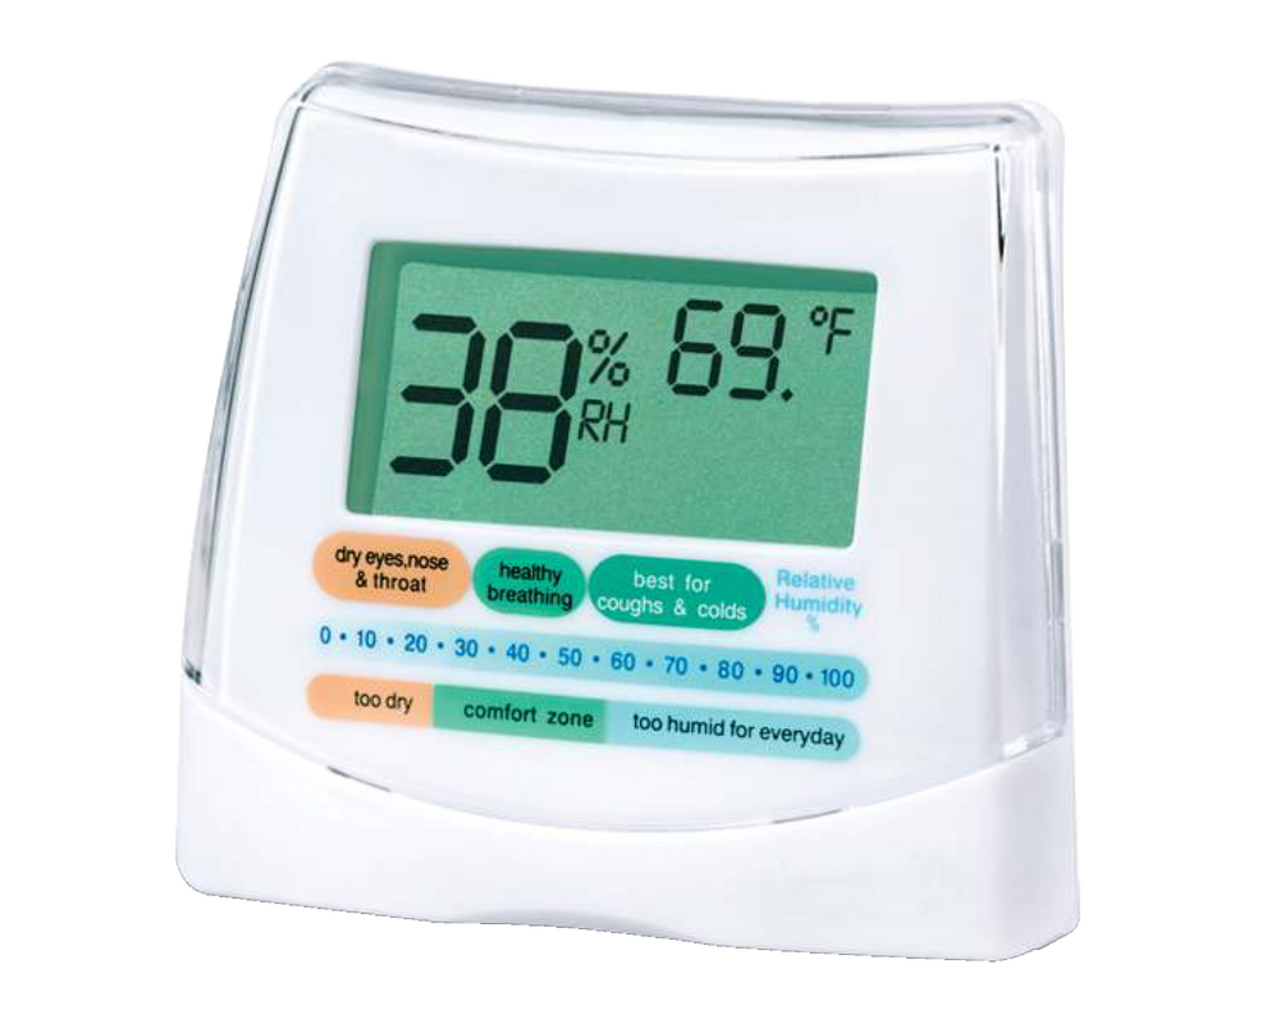 Indicateur numérique à DEL pour humidité/température/hygromètre Honeywell  H10C, blanc